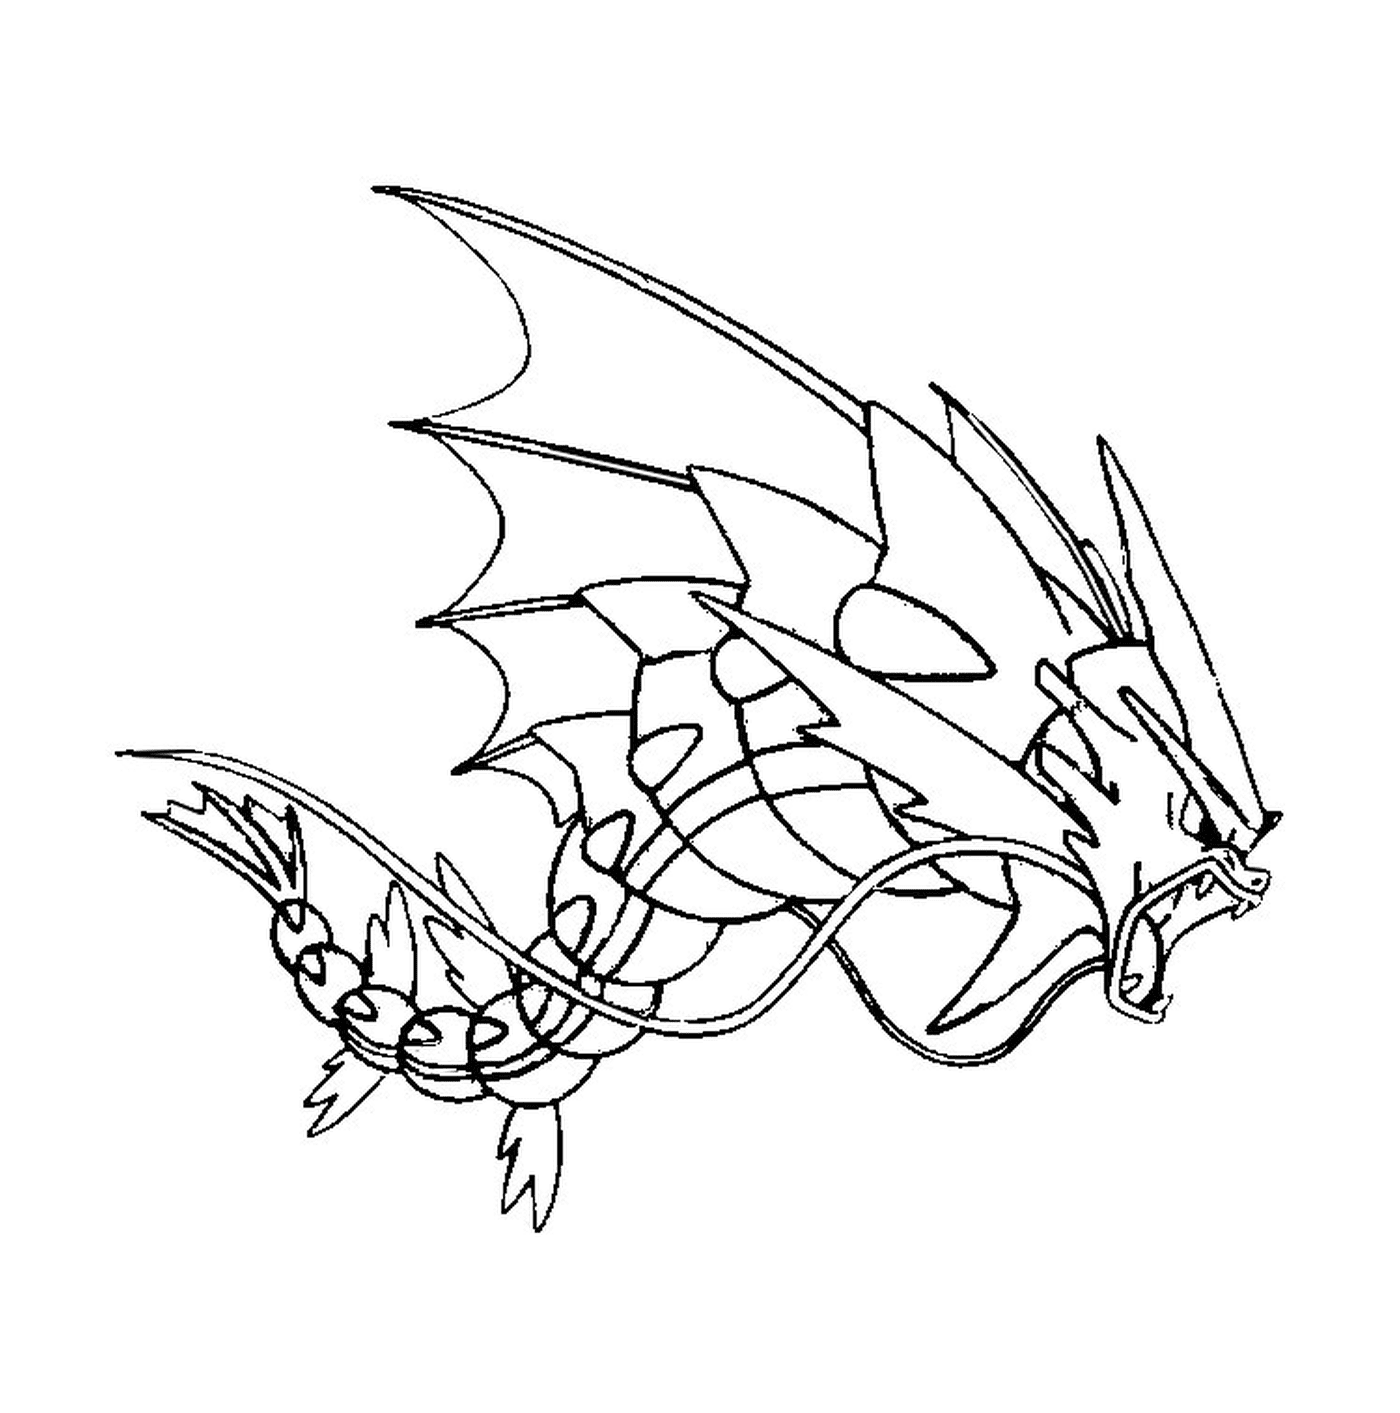   Léviator, un dragon au style de dessin linéaire 